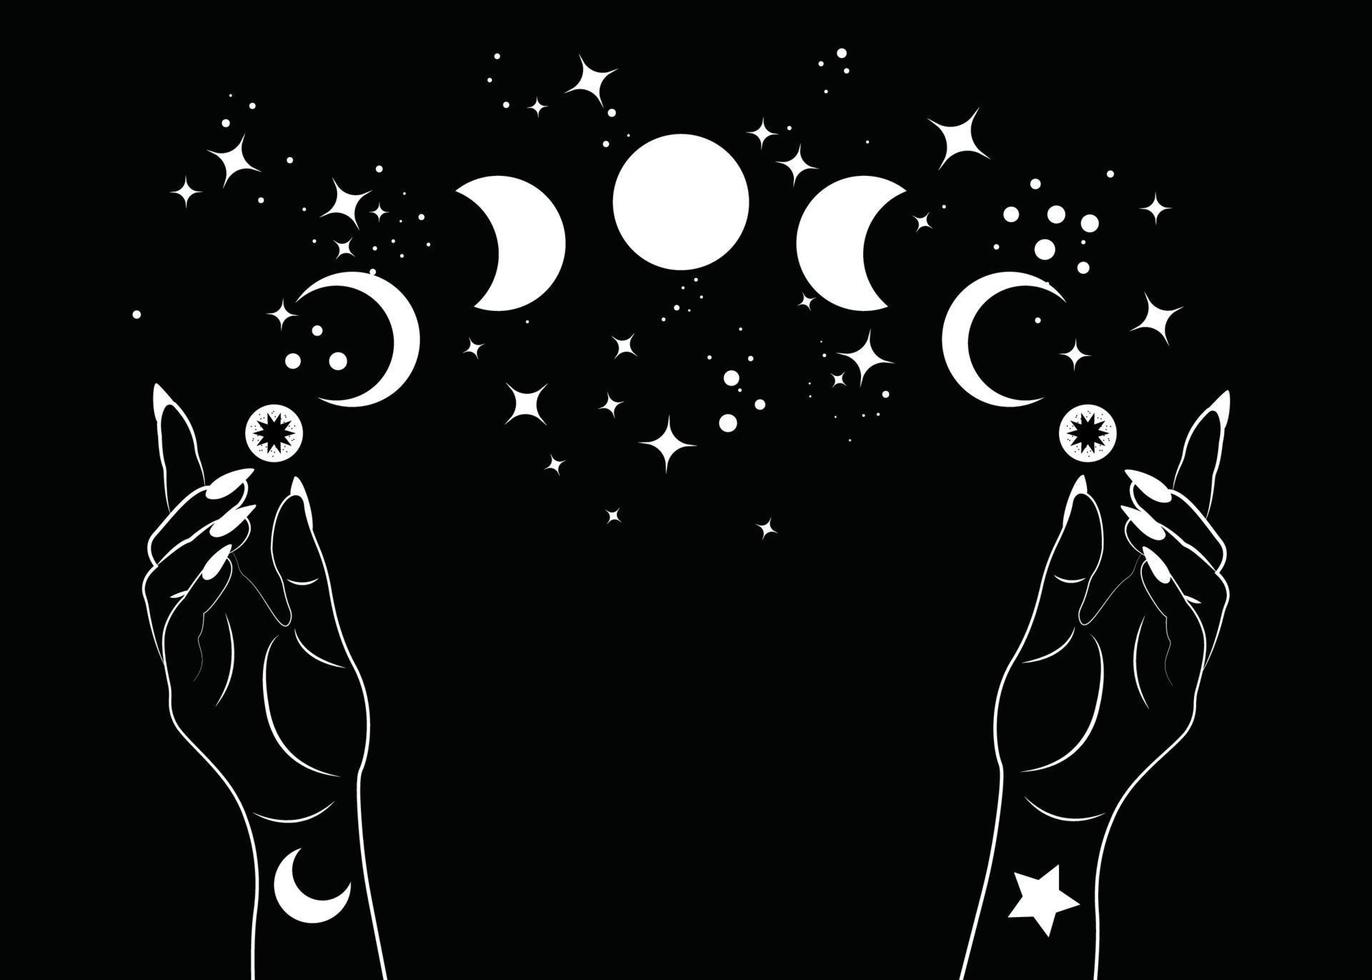 fasi lunari mistiche e mani della donna, simbolo della dea wiccan pagana tripla luna, spazio magico esoterico alchimia, ruota sacra dell'anno, vettore isolato su sfondo nero